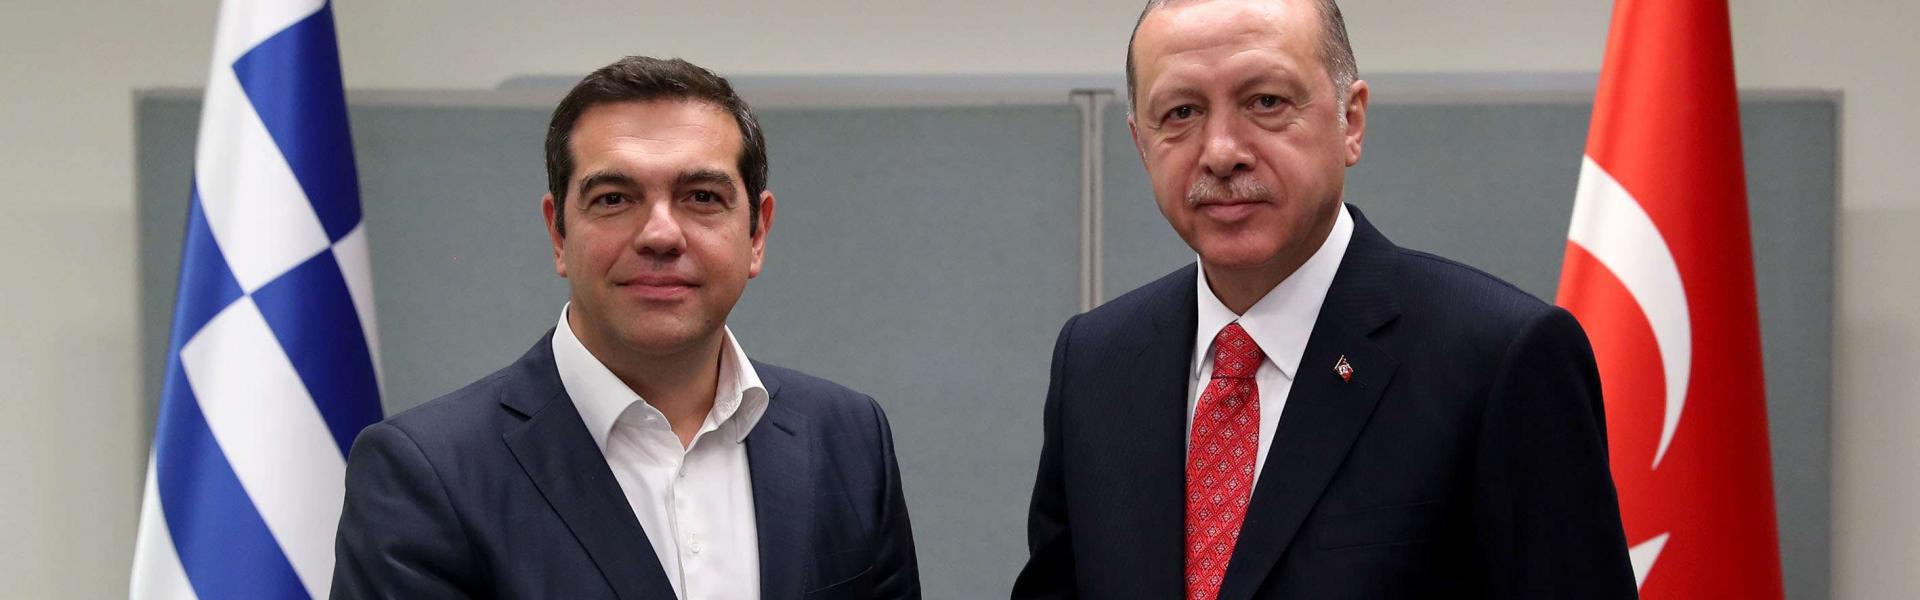 Ο Τσίπρας «ξαναχτυπά» στα Αγγλικά: Το «nice to meet you» στον Ερντογάν και το Τwitter… γλεντά